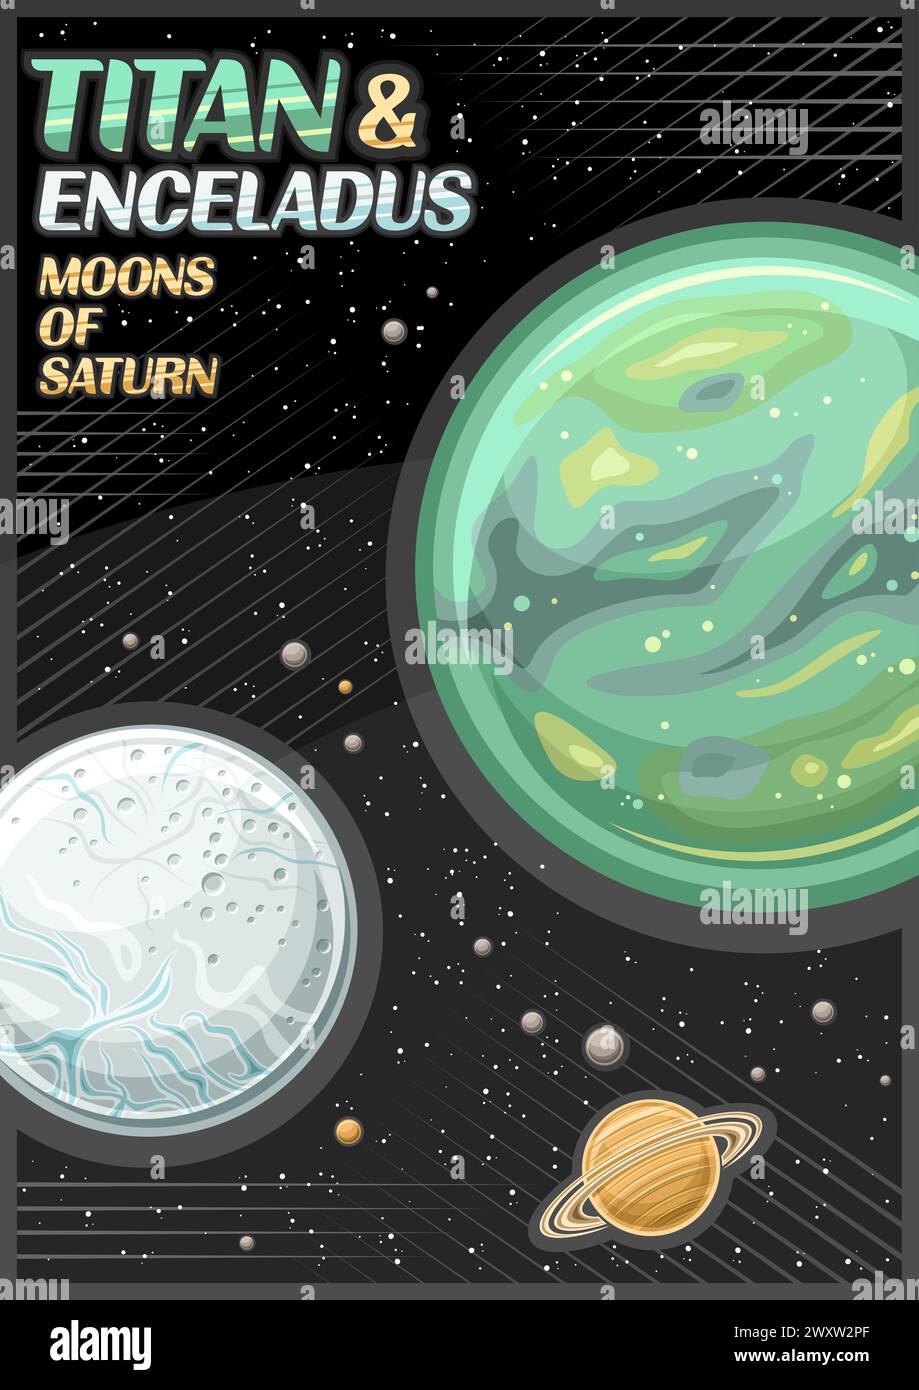 Poster vettoriale per Saturno lune, banner verticale con titano rotante ed encelado, intorno al pianeta saturno su sfondo stellato scuro, fantasia cosmo leafl Illustrazione Vettoriale